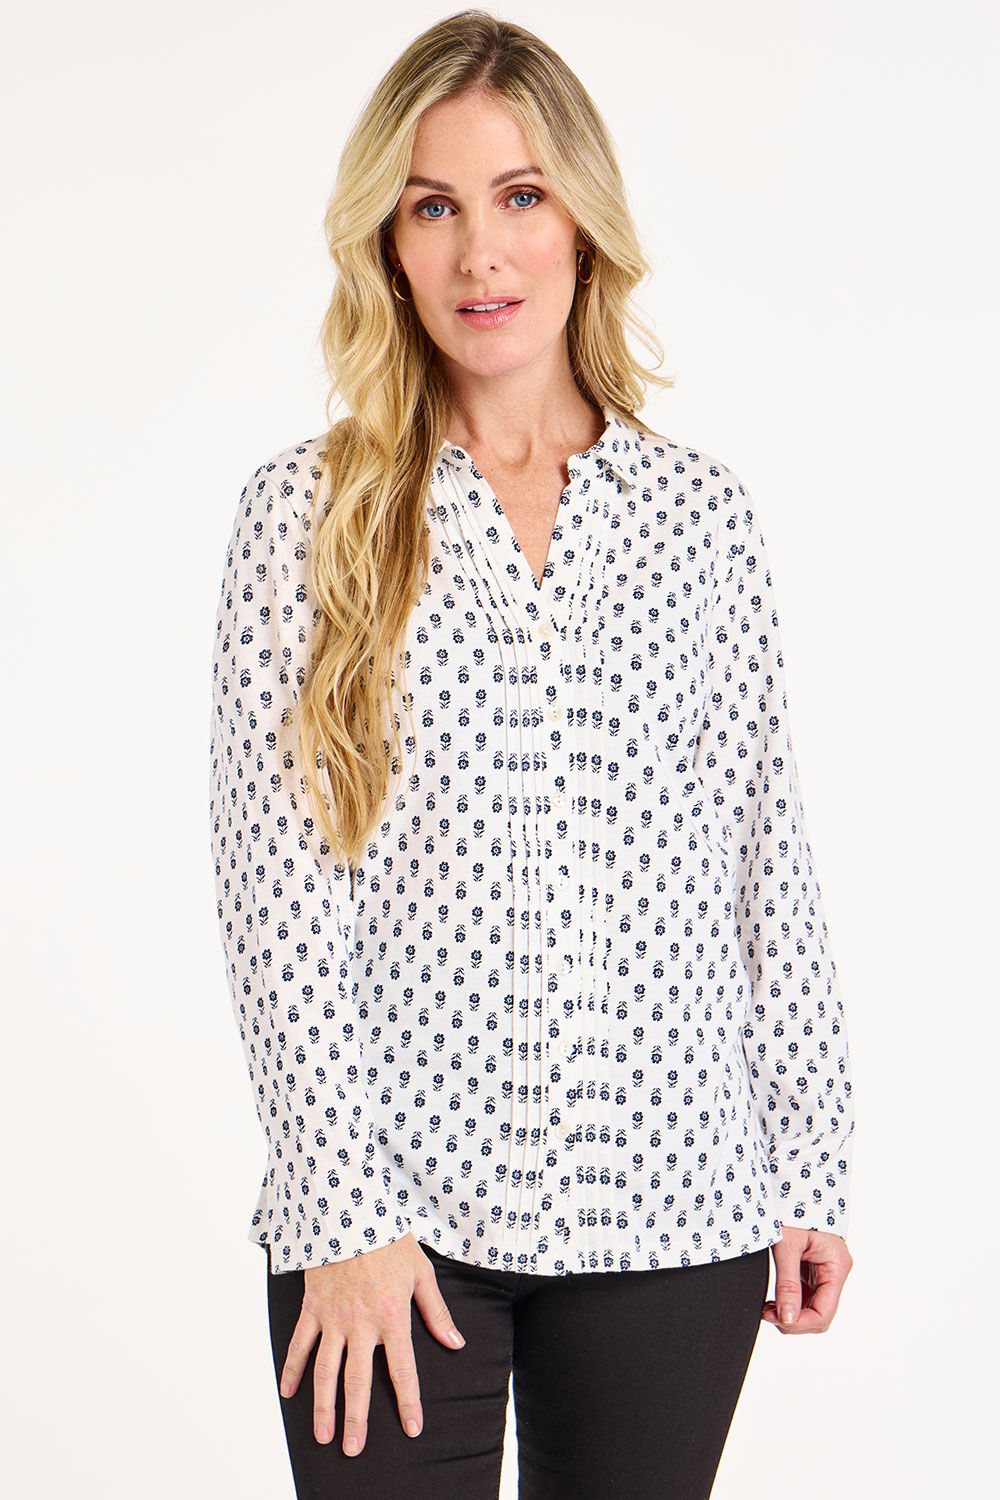 Bonmarche White/grey Long Sleeve Floral Foulard Print Jersey Shirt, Size: 10